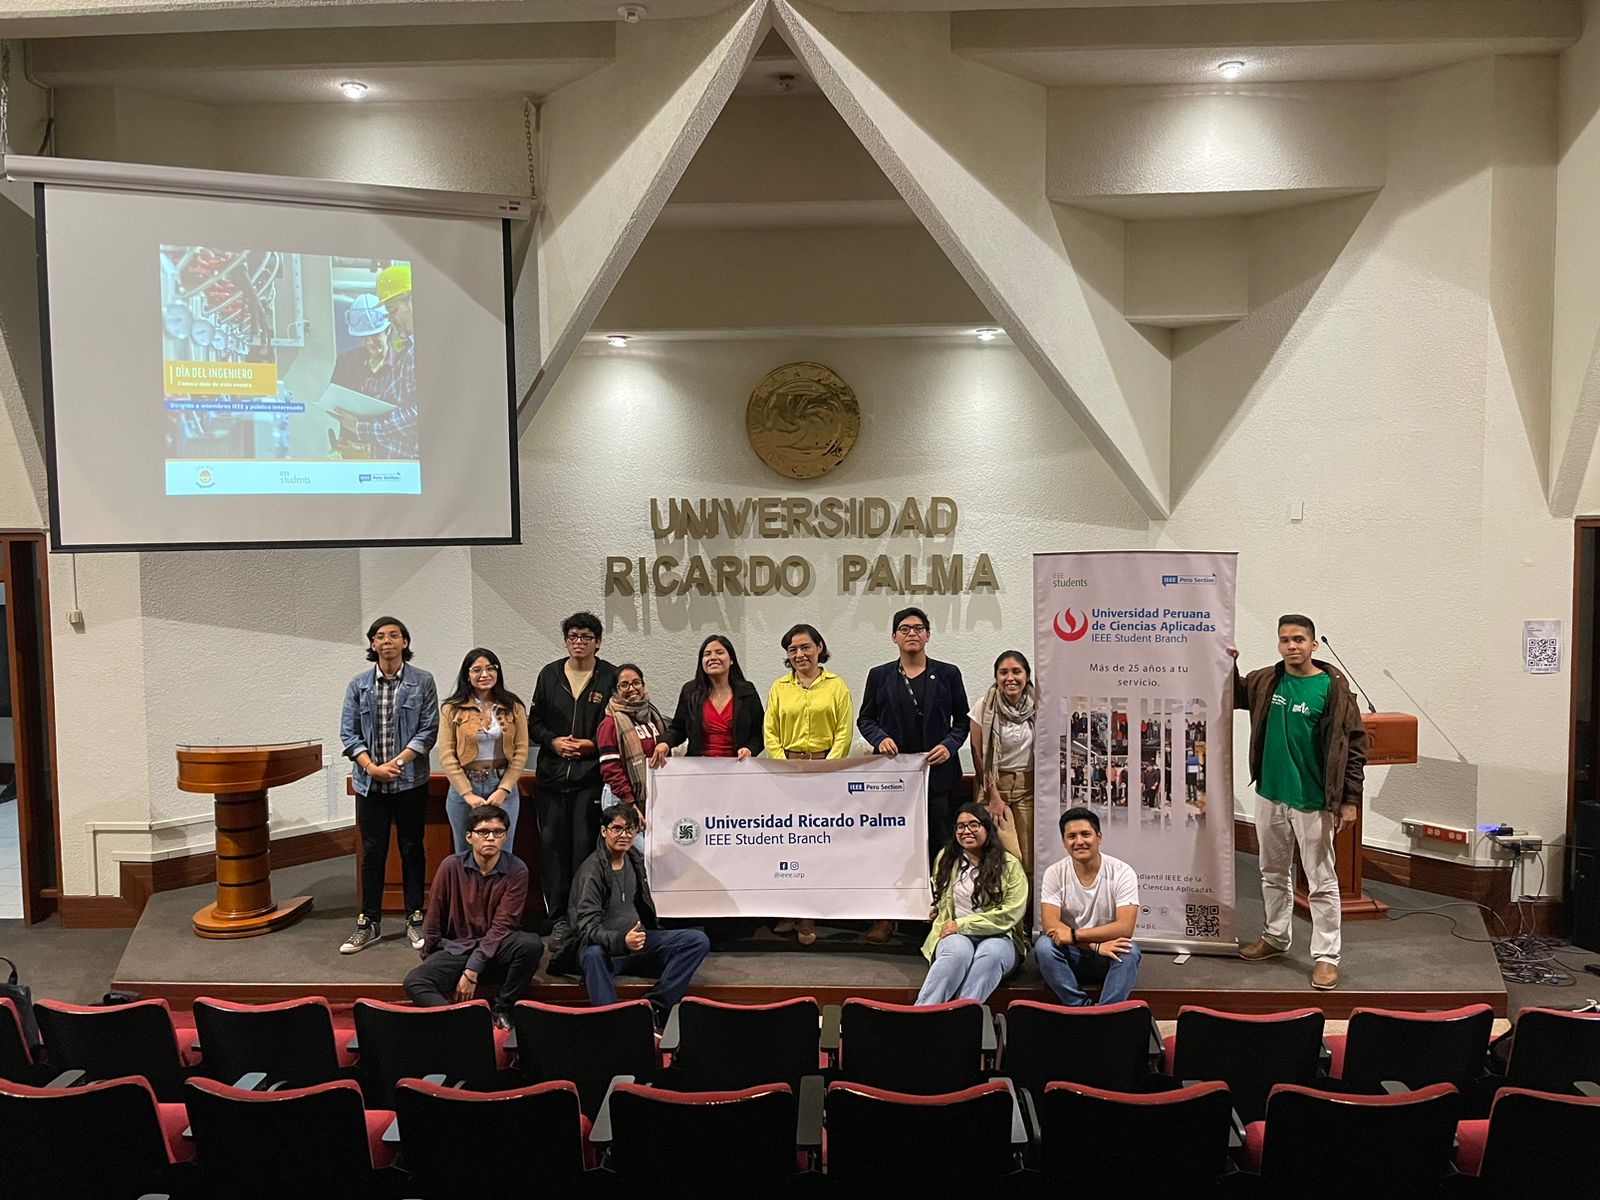 Engineer's Day - Ricardo Palma University